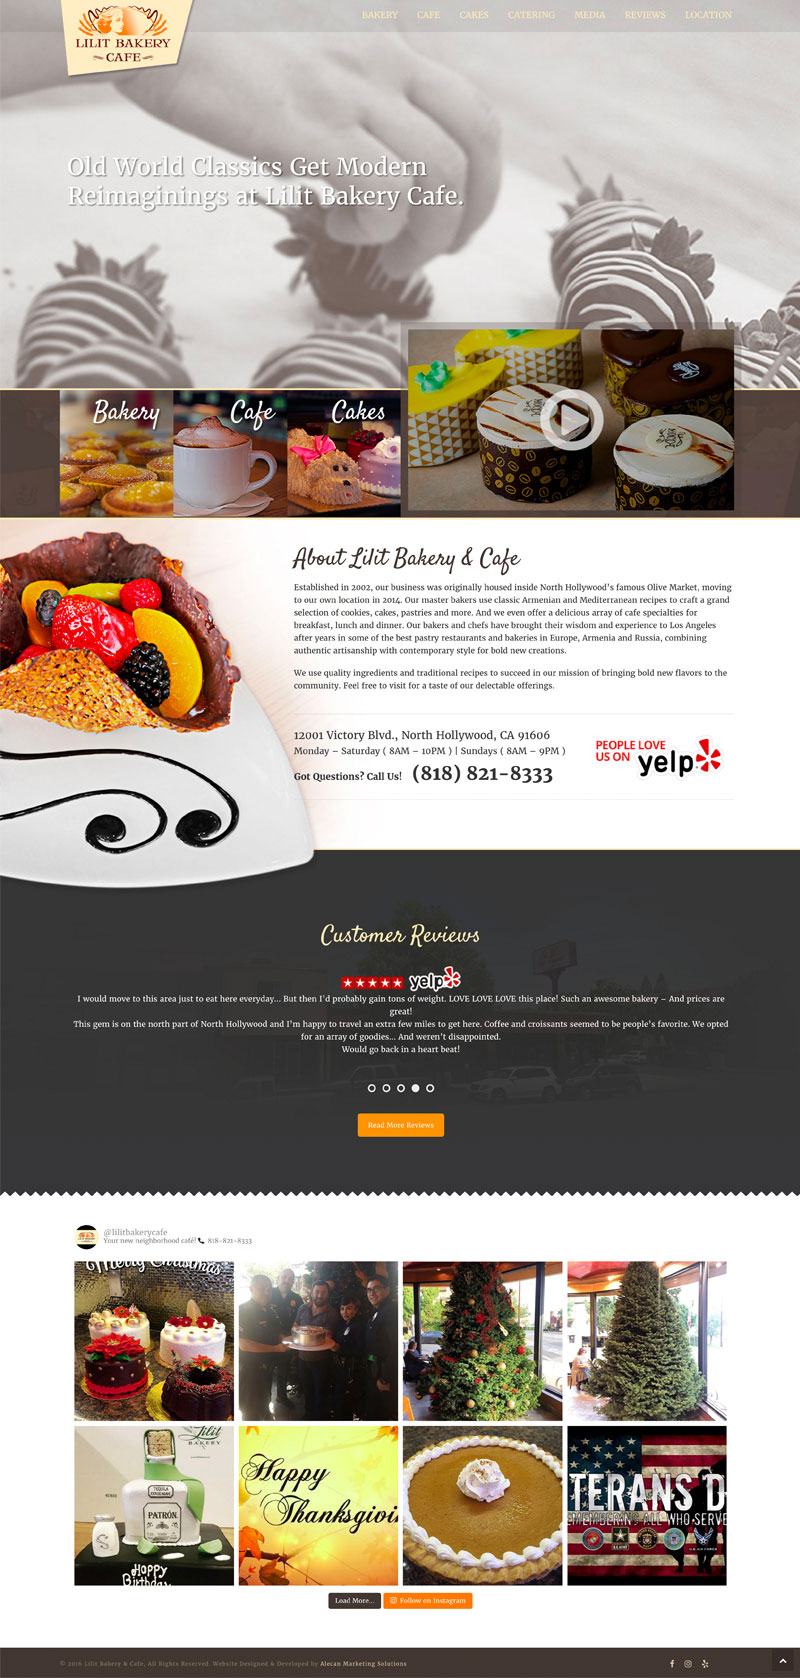 Lilit Bakery & Cafe - Website